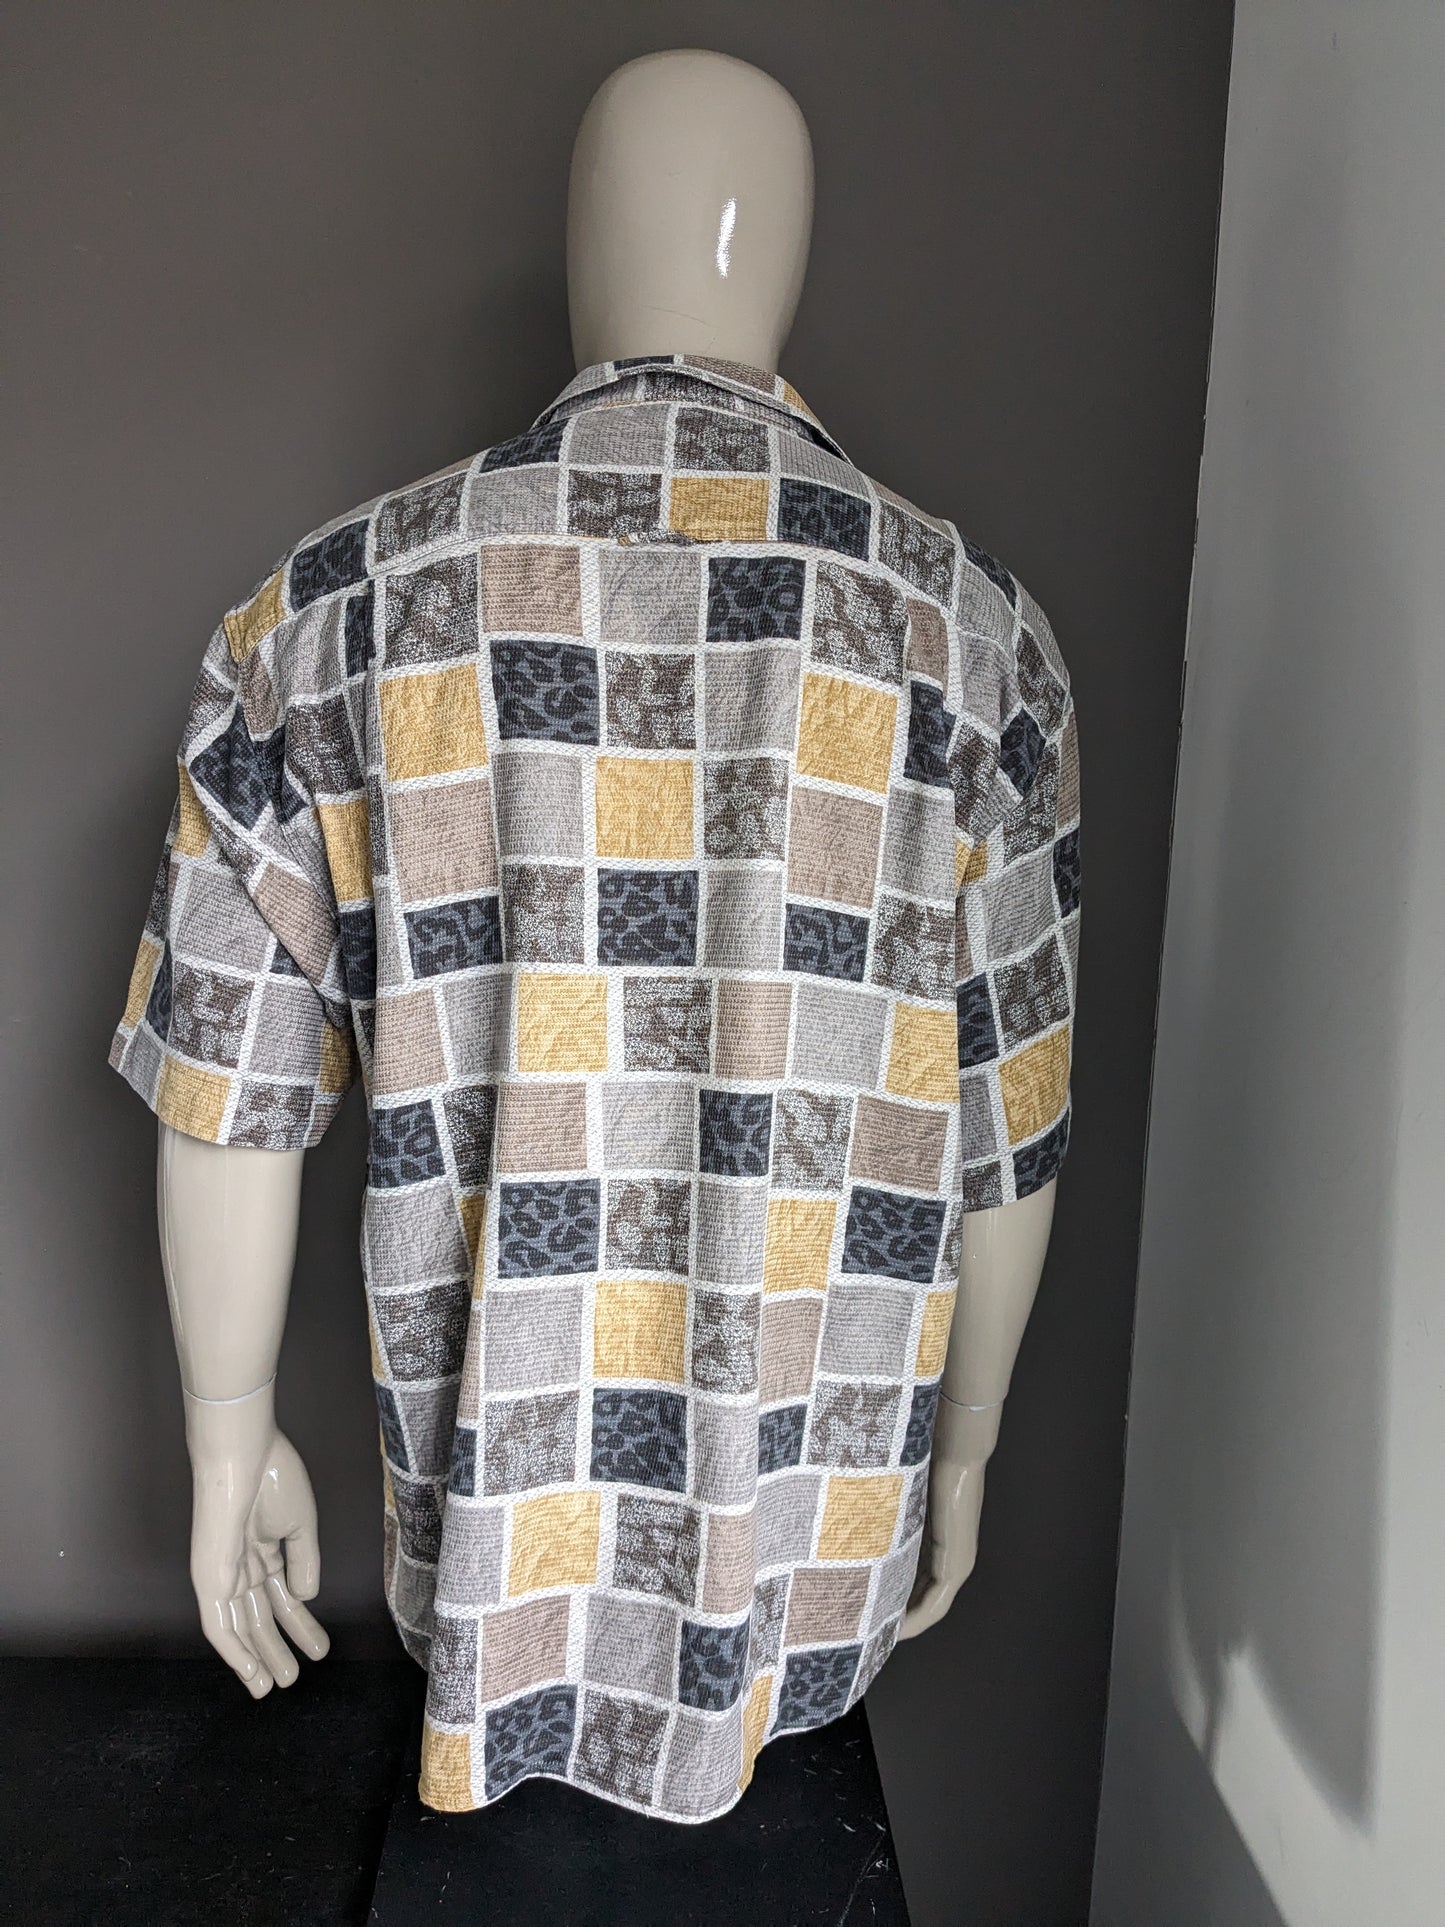 Camisa de temporadas vintage manga corta. Estampado gris amarillo marrón. Tamaño 2xl / xxl.